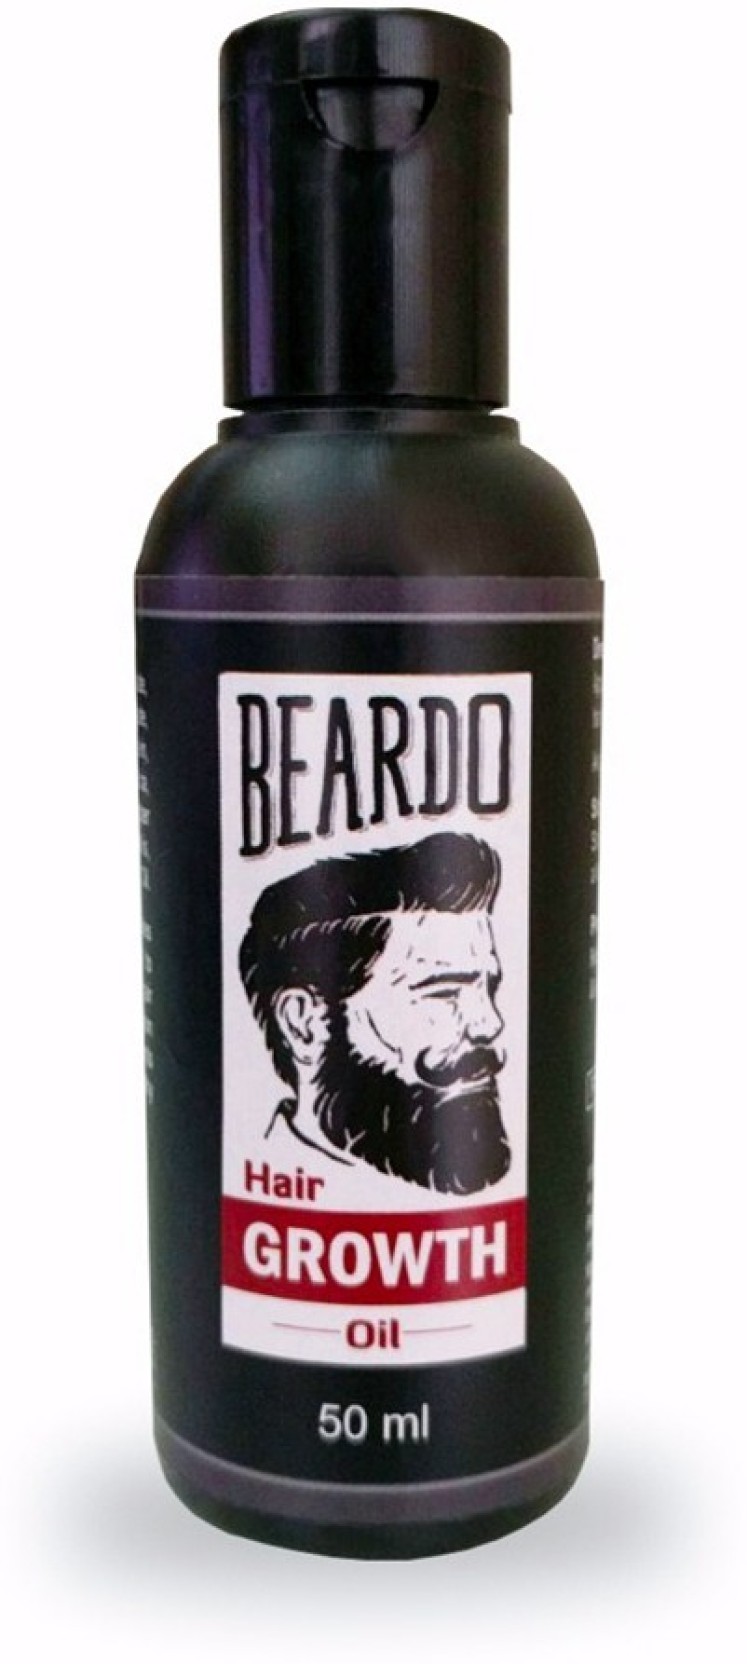 Beardo Beard Growth Hair Oil Buy Beardo Beard Growth Hair Oil At